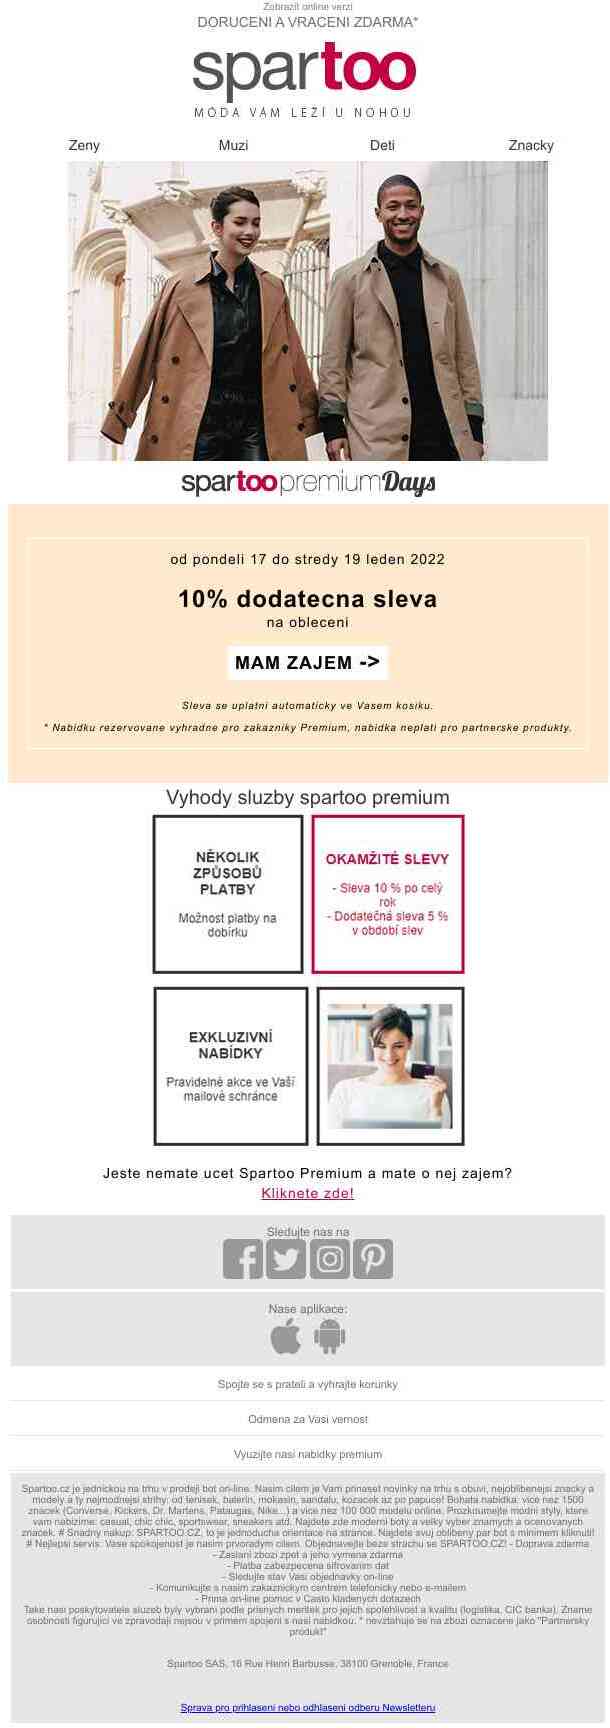 Premium Days: 10% dodatečná sleva na oblečení